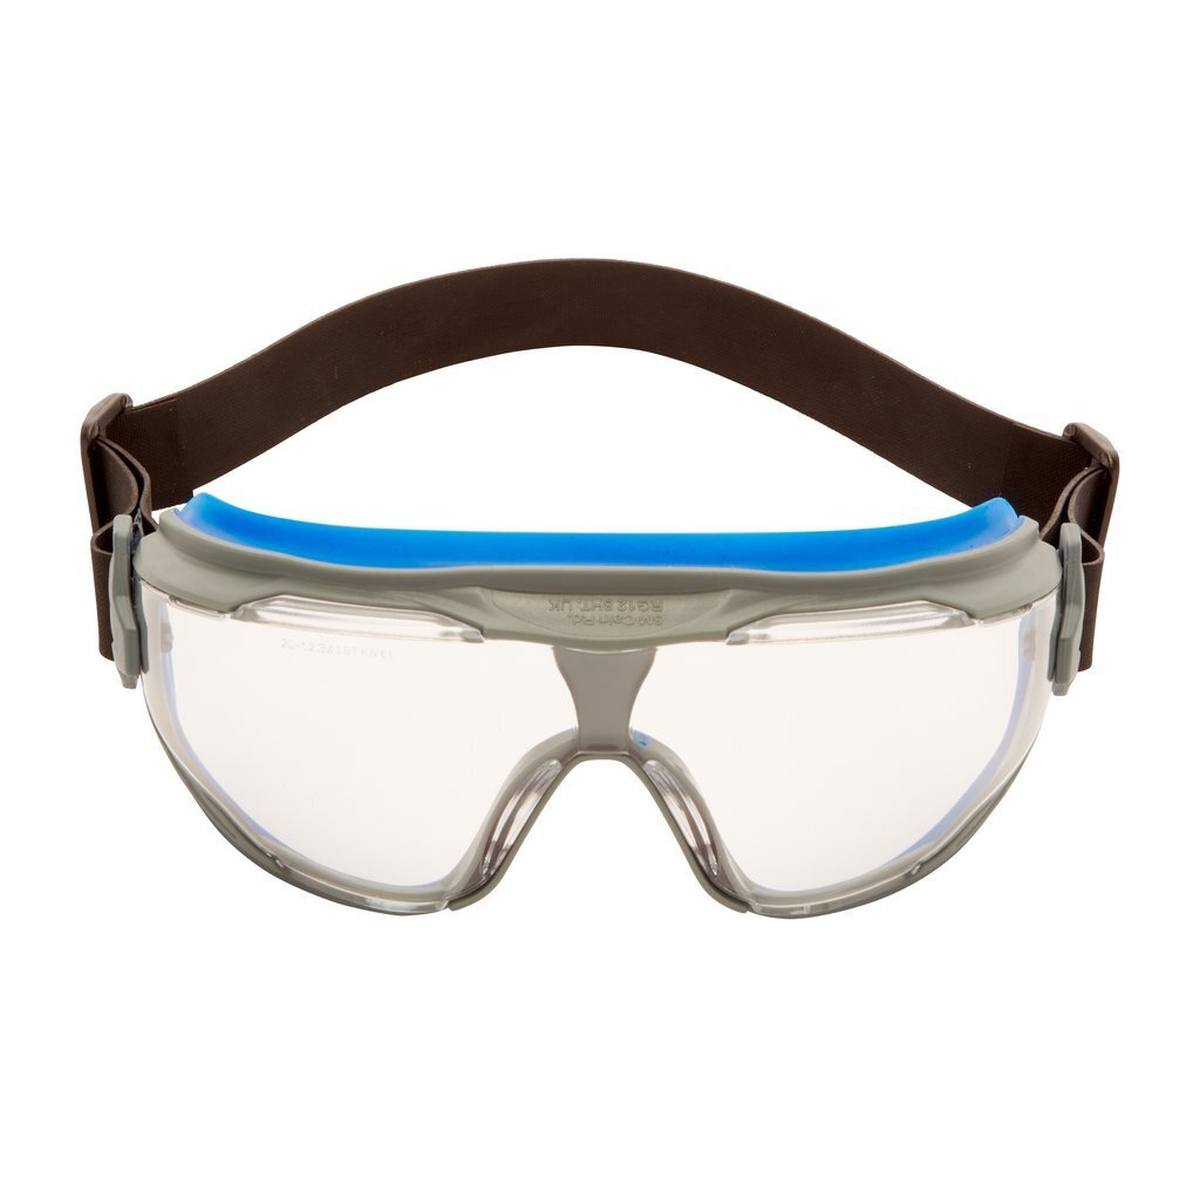 3M GoggleGear 500 Vollsichtbrille GG501NSGAF-BLU, autoklavierbar, blau-grauer Rahmen, schwarzes Neopren-Kopfband, klare Scheiben